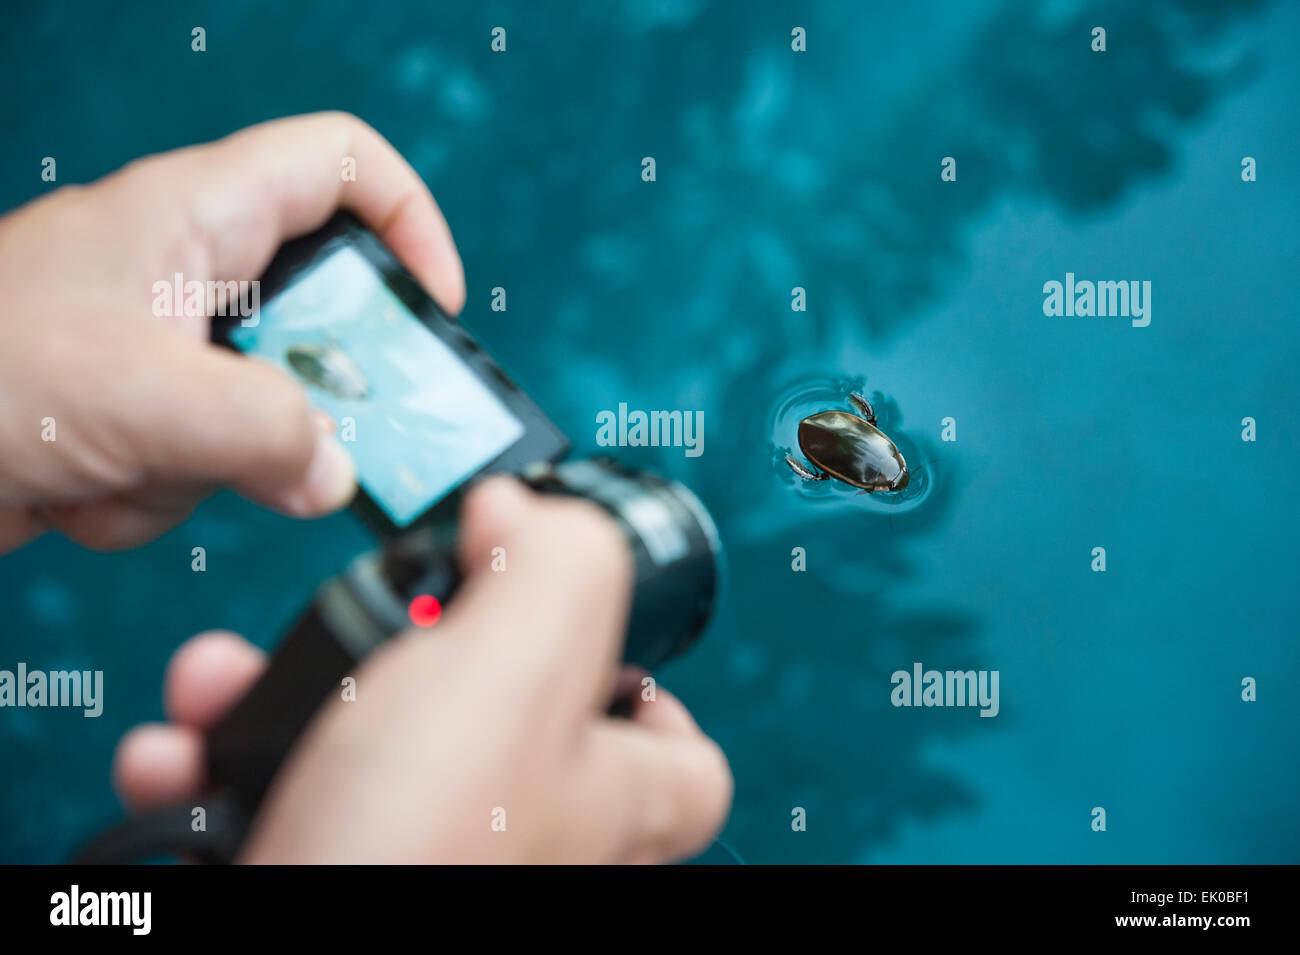 Uomo di mani tenendo una videocamera cattura una piscina acqua beetle Foto Stock